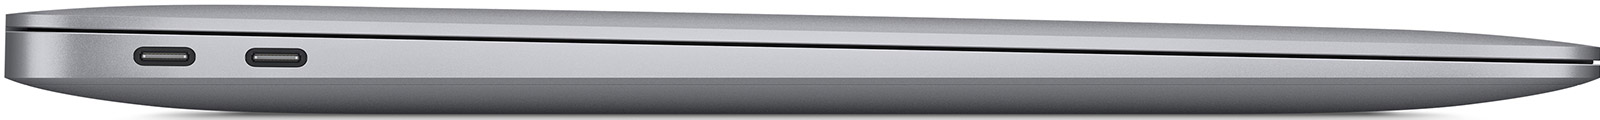 MacBook-Air-13-3-M1-8-Core-16-GB-1-TB-7-Core-Grafik-CH-Space-Grau-05.jpg